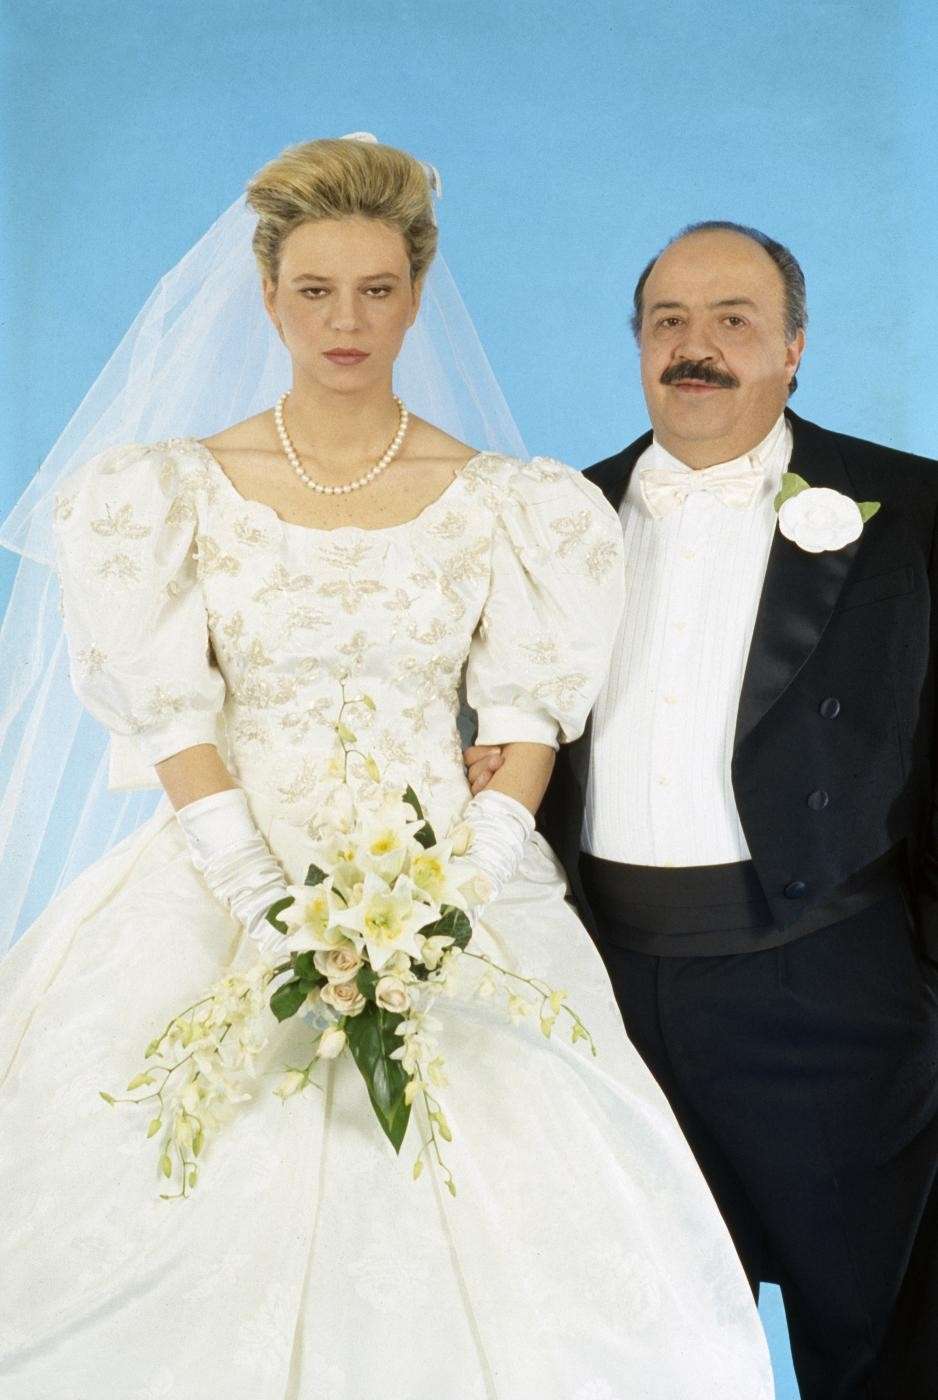 Maria De Filippi e Maurizio Costanzo nel giorno delle nozze